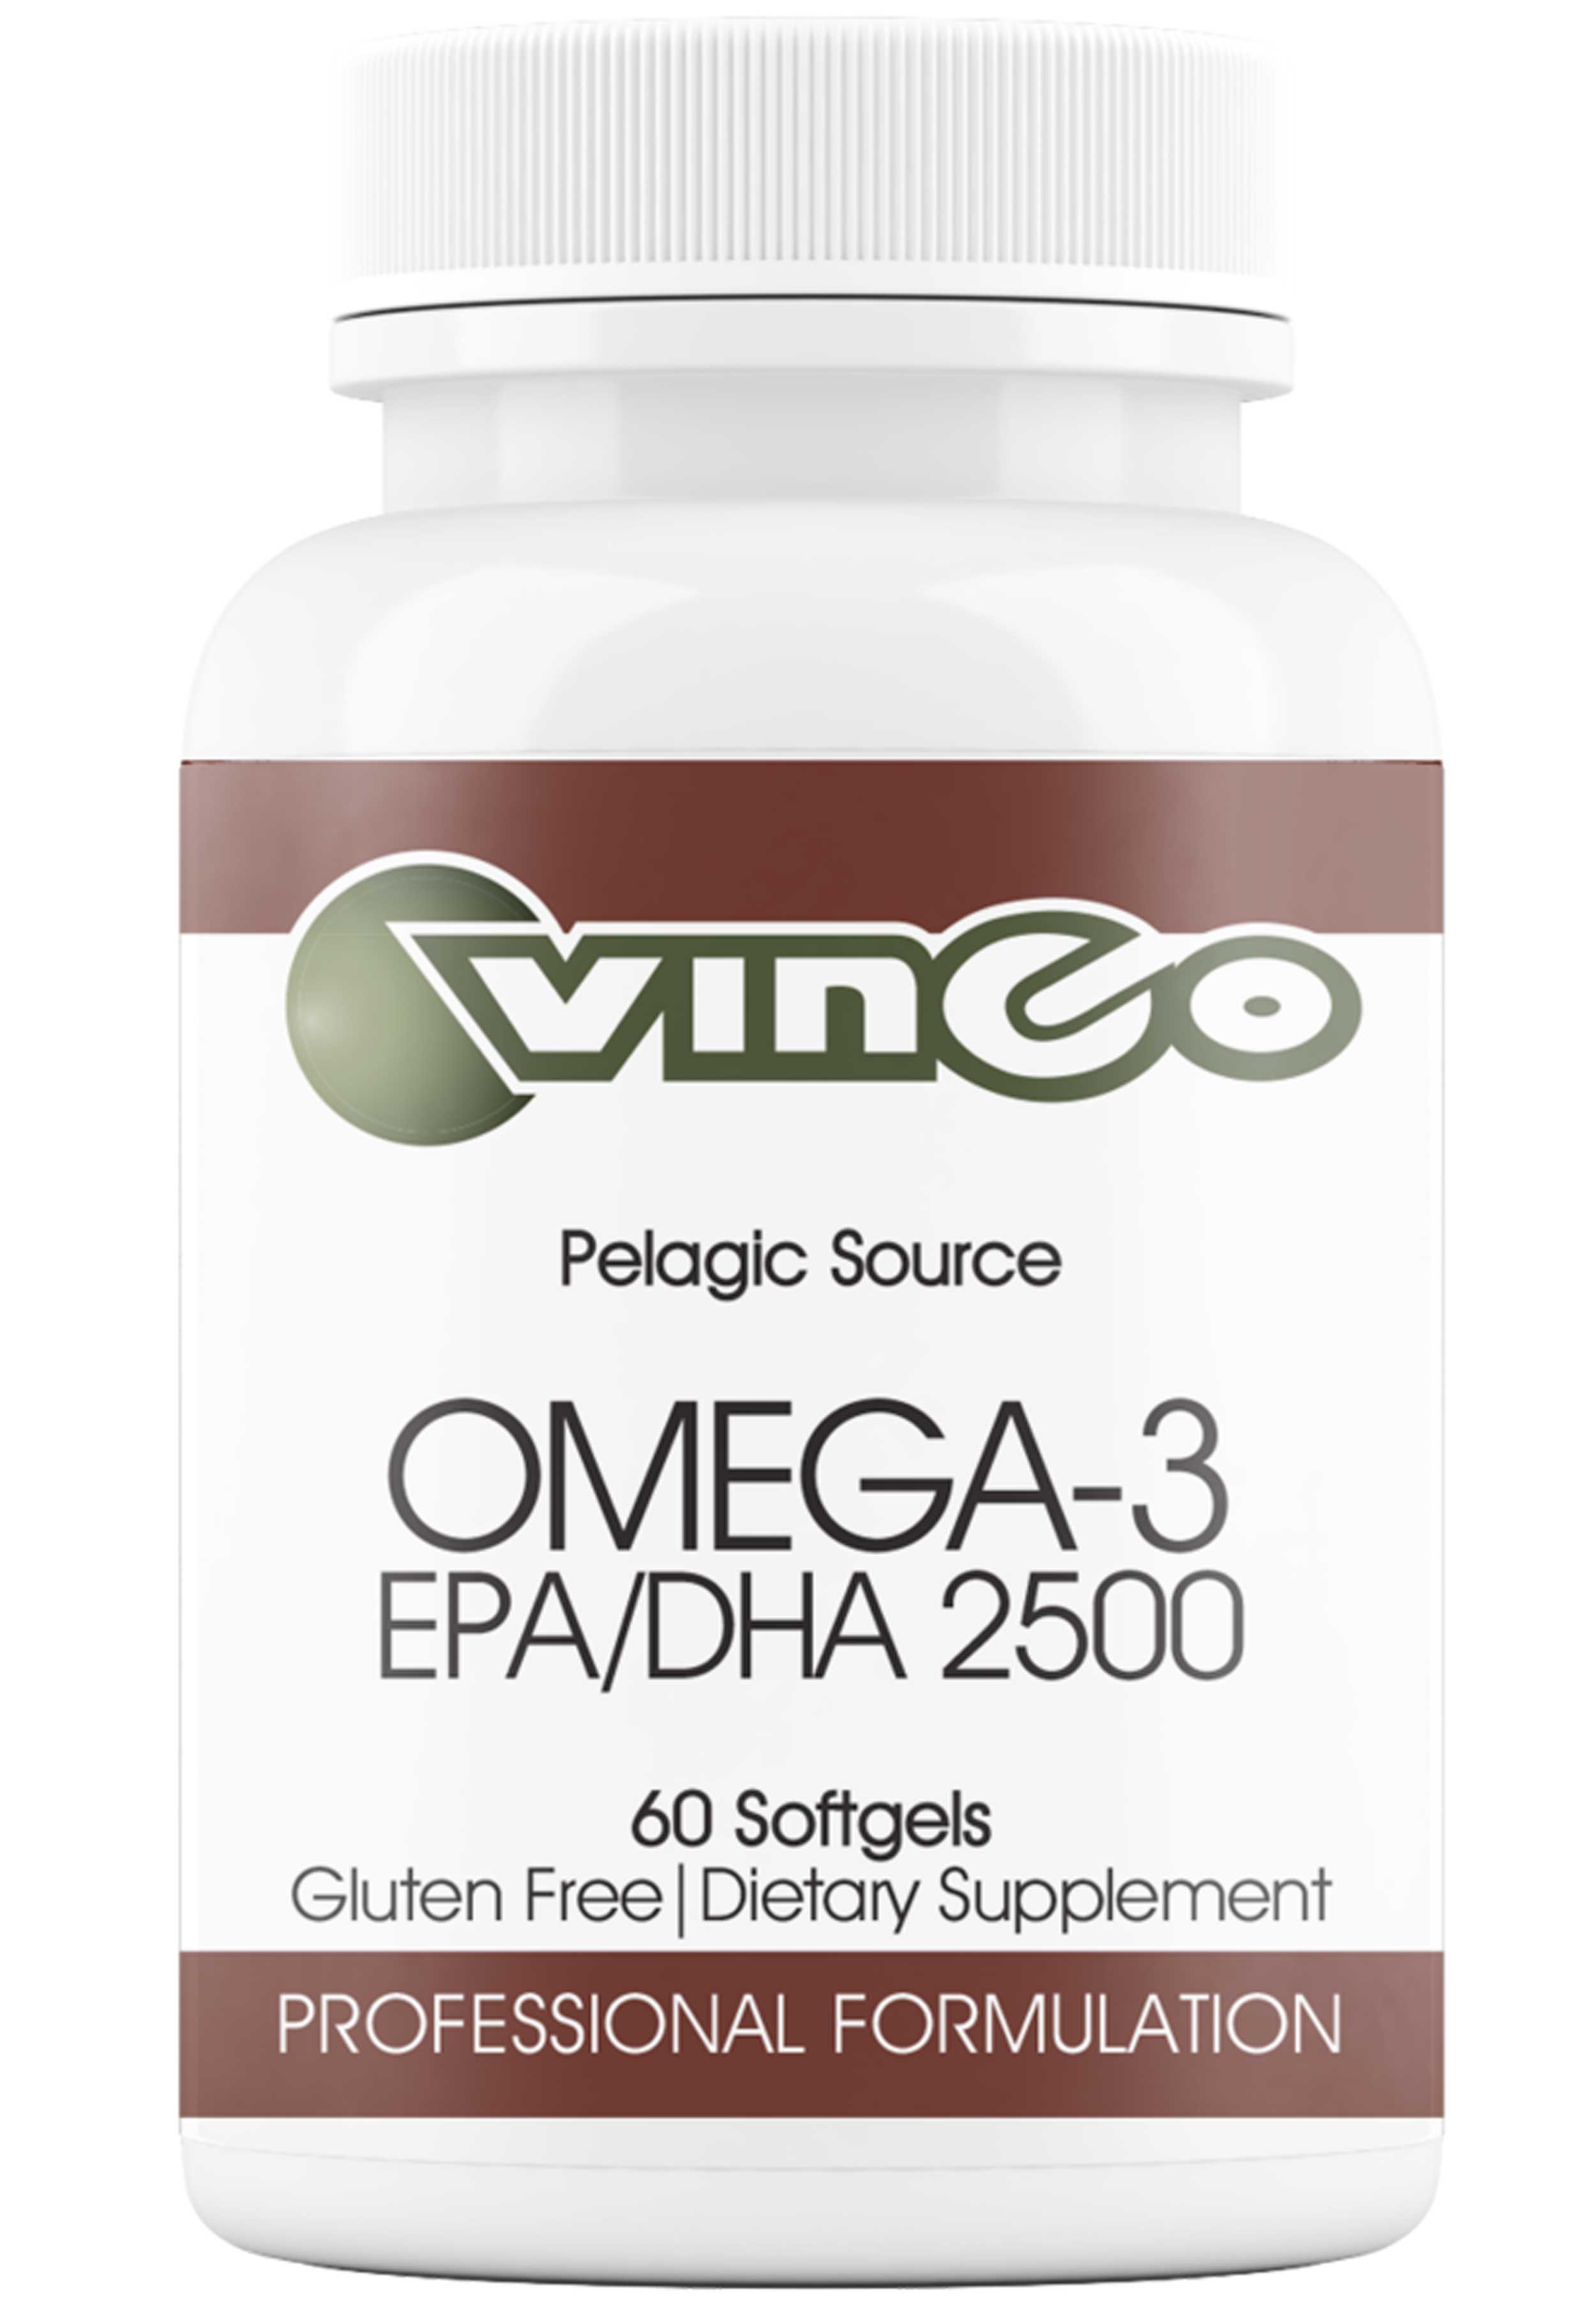 Vinco Omega-3 DHA/EPA 2500